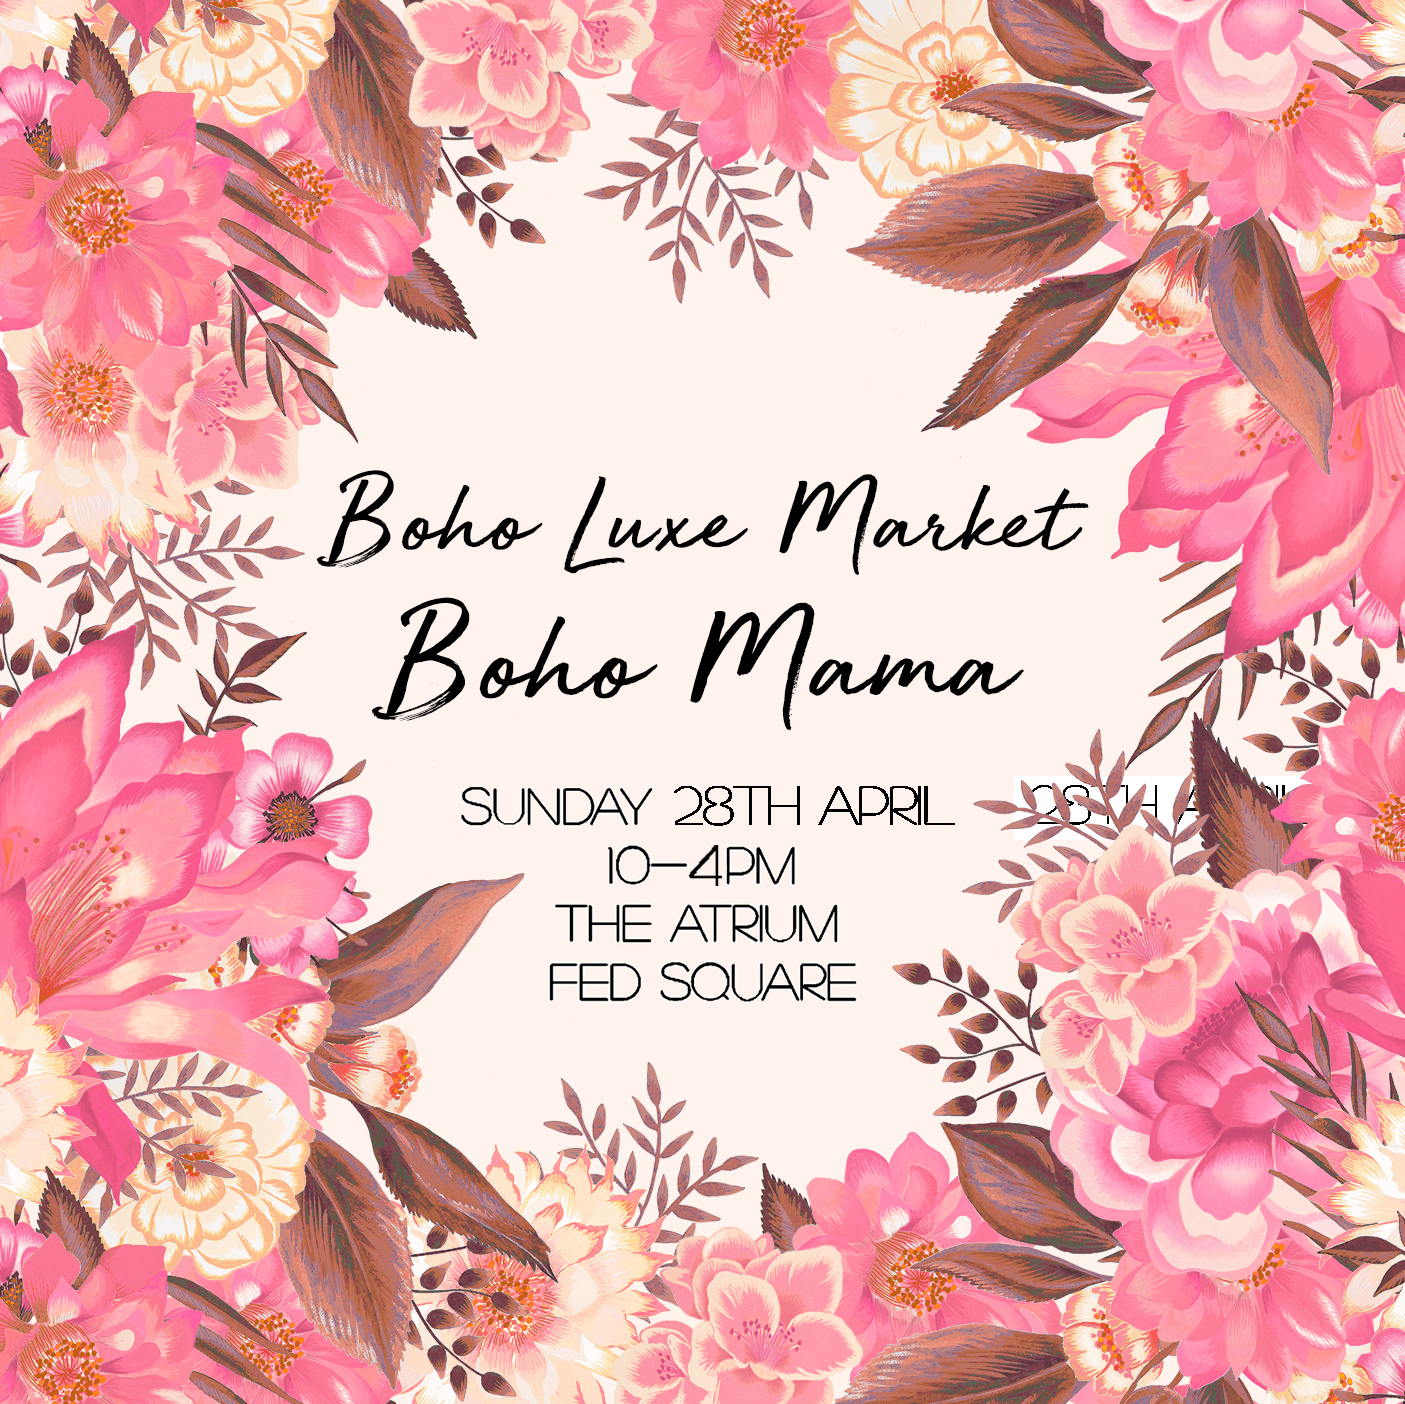 BOHO MAMA Boho Luxe Market ...sunday... FED SQUARE 10-4pm MELBOURNE